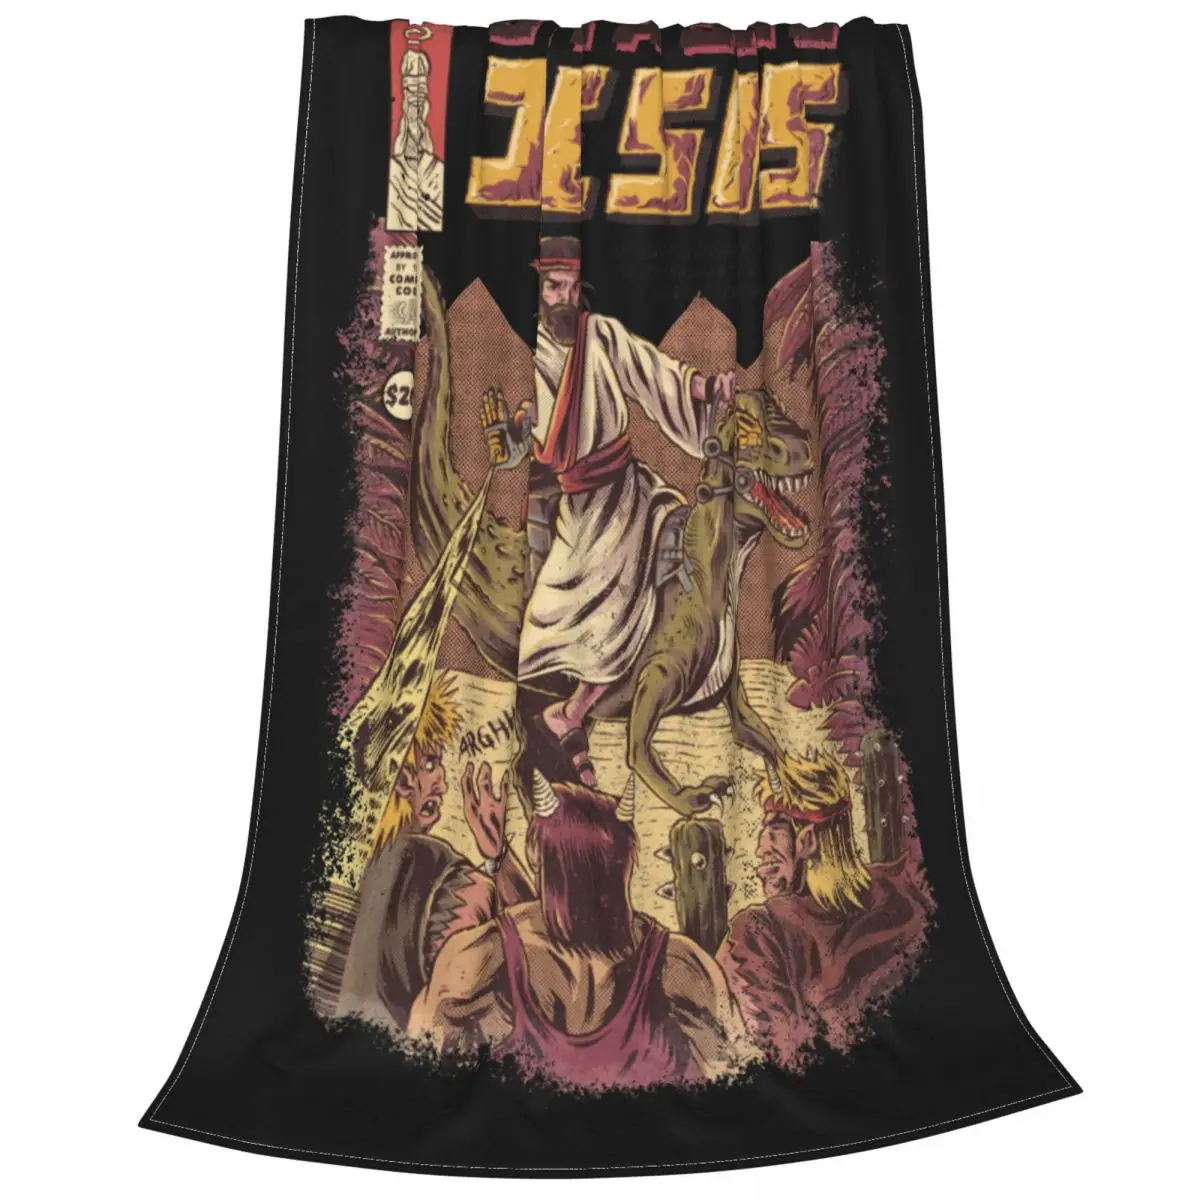 

Одеяло в стиле ретро с изображением Иисуса из Юрского периода, одеяла для постельного белья в стиле японского аниме, монстр, плюшевое тонкое...